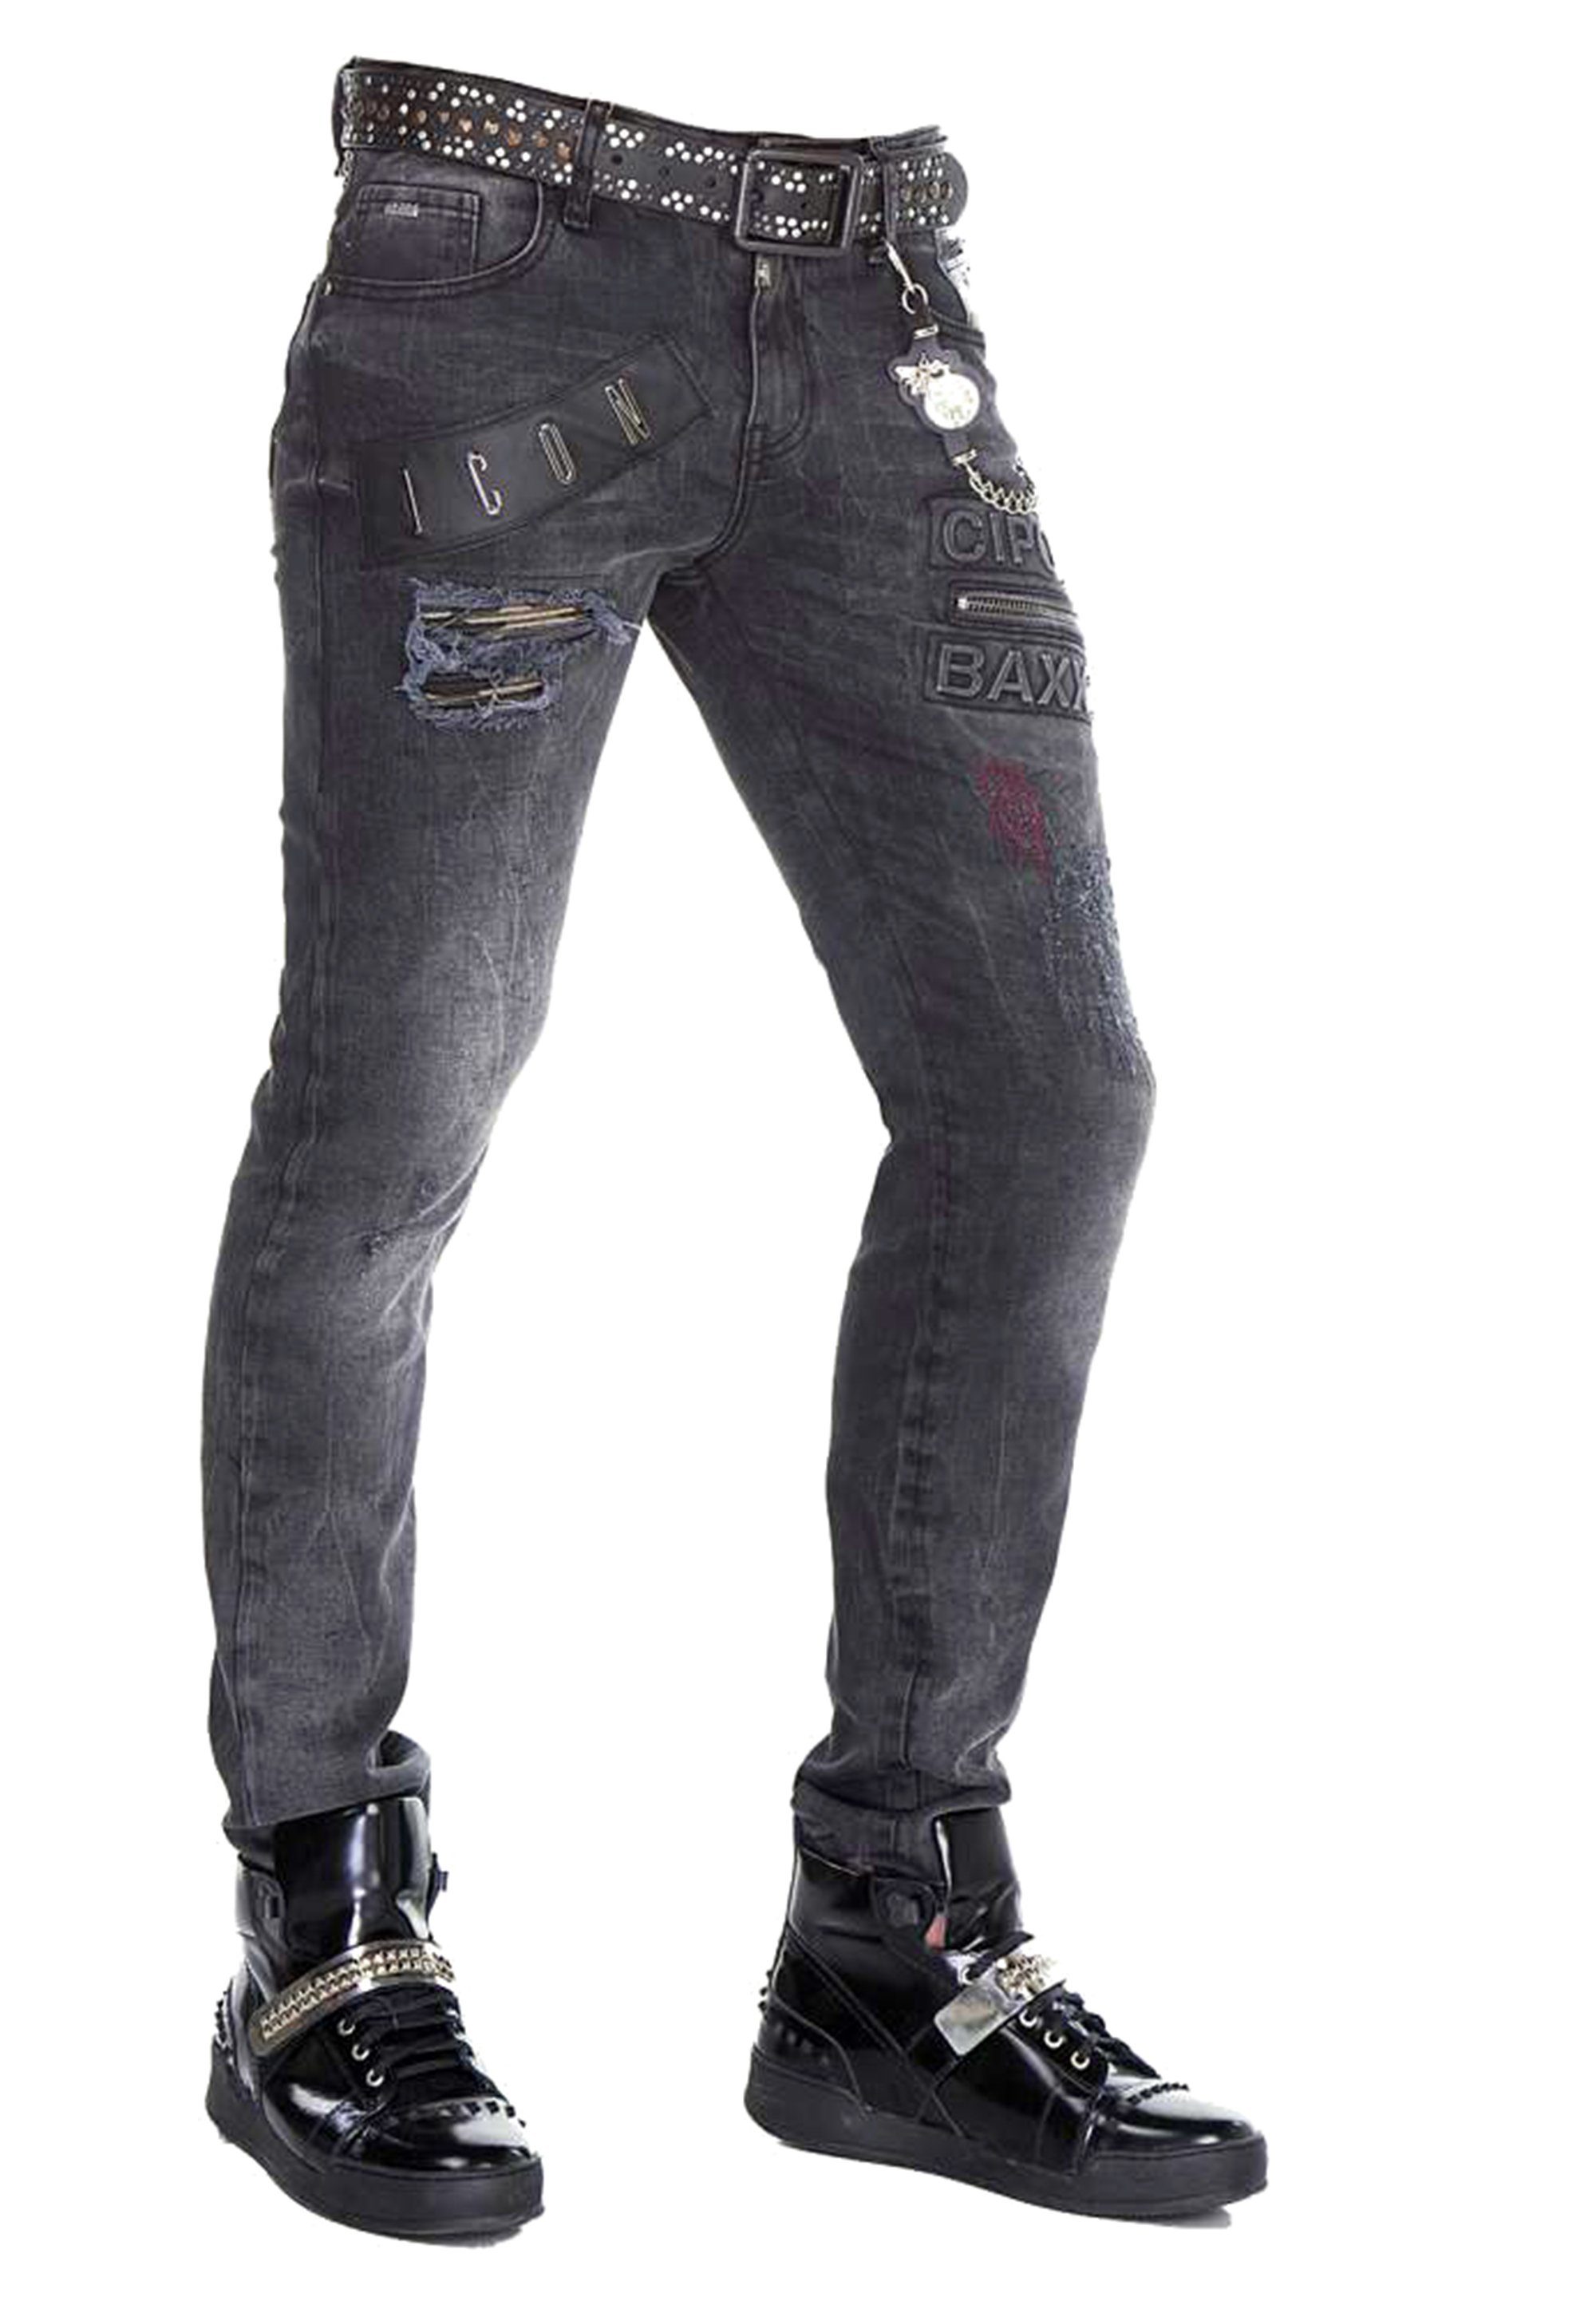 Cipo Regular Bequeme im & Jeans Fit-Schnitt Baxx